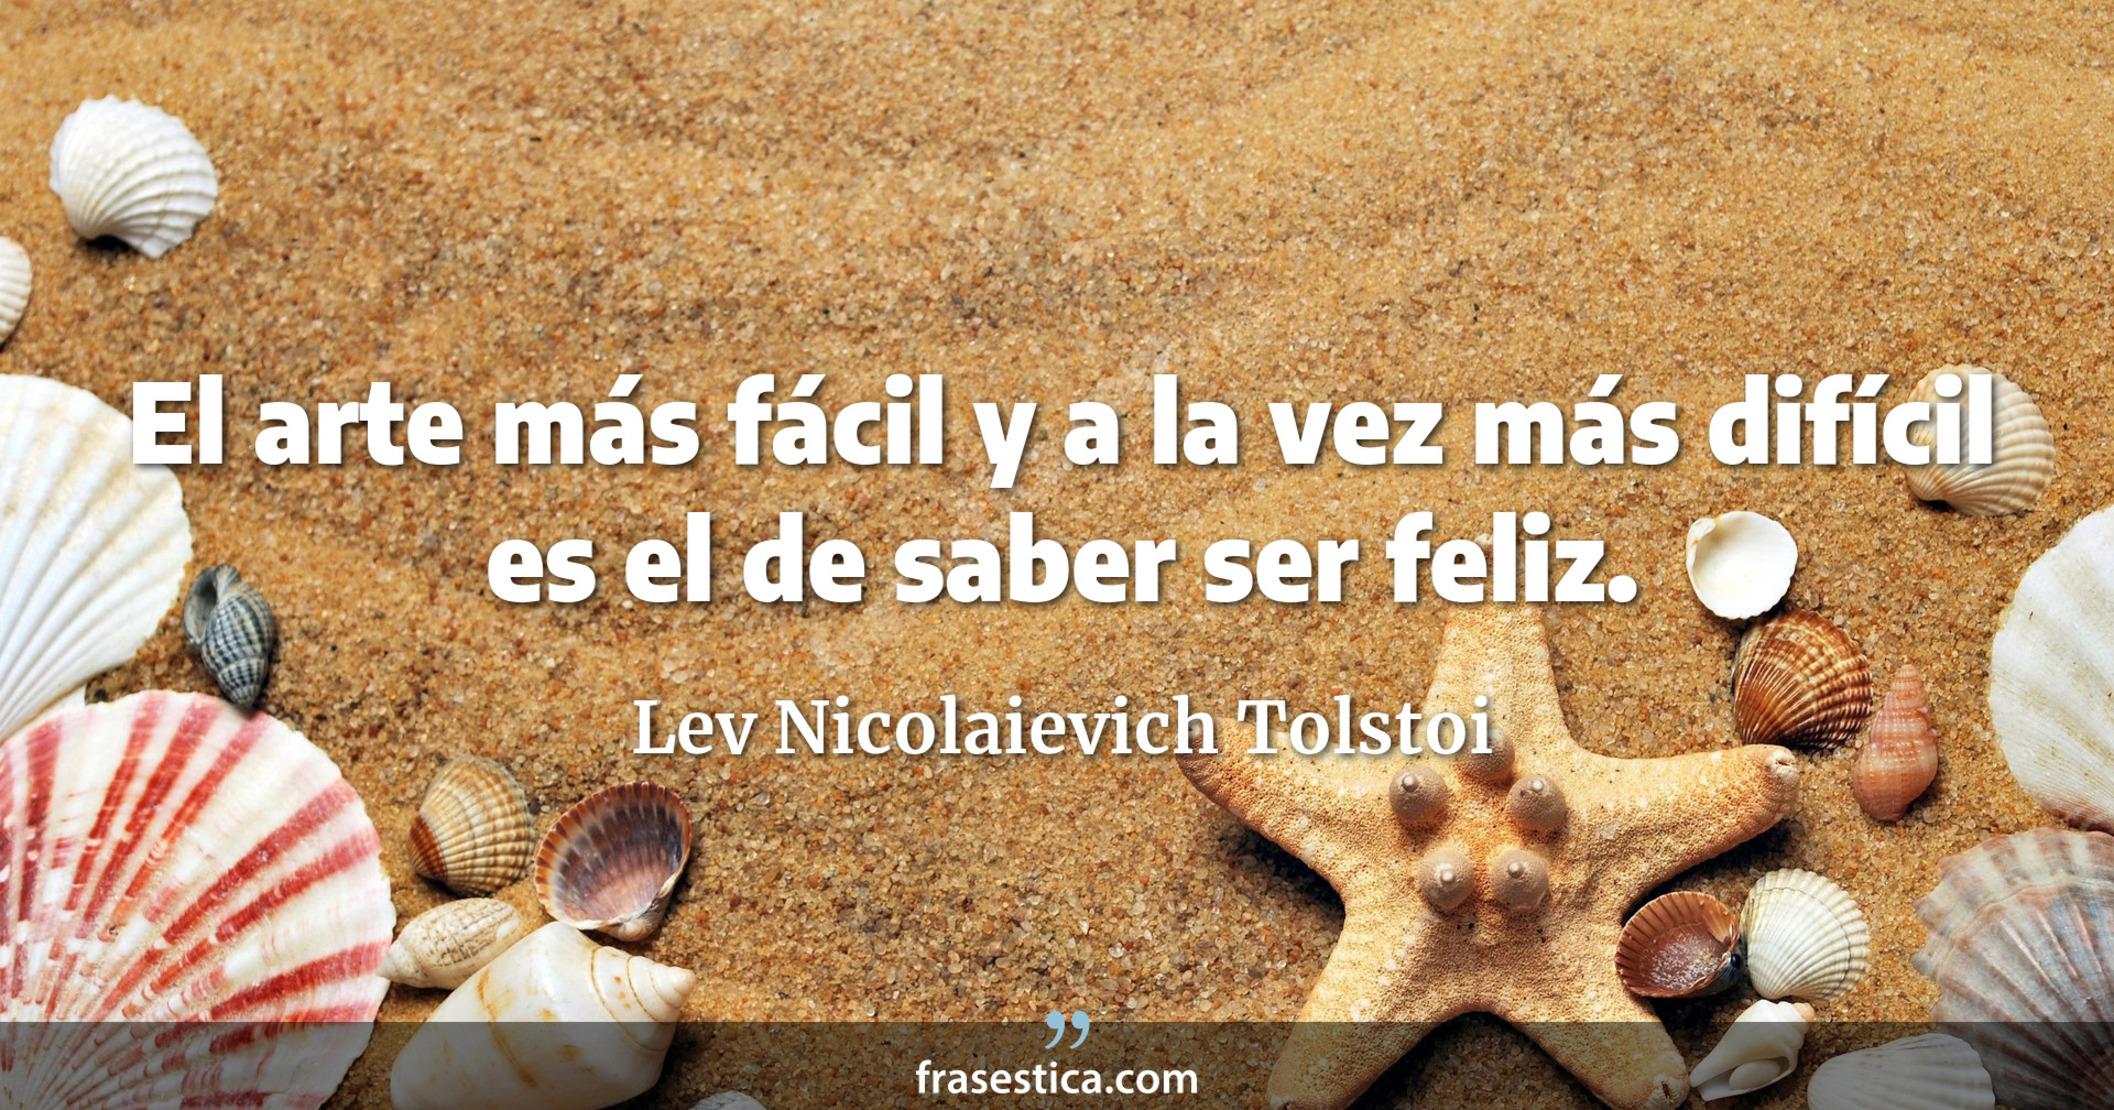 El arte más fácil y a la vez más difícil es el de saber ser feliz. - Lev Nicolaievich Tolstoi